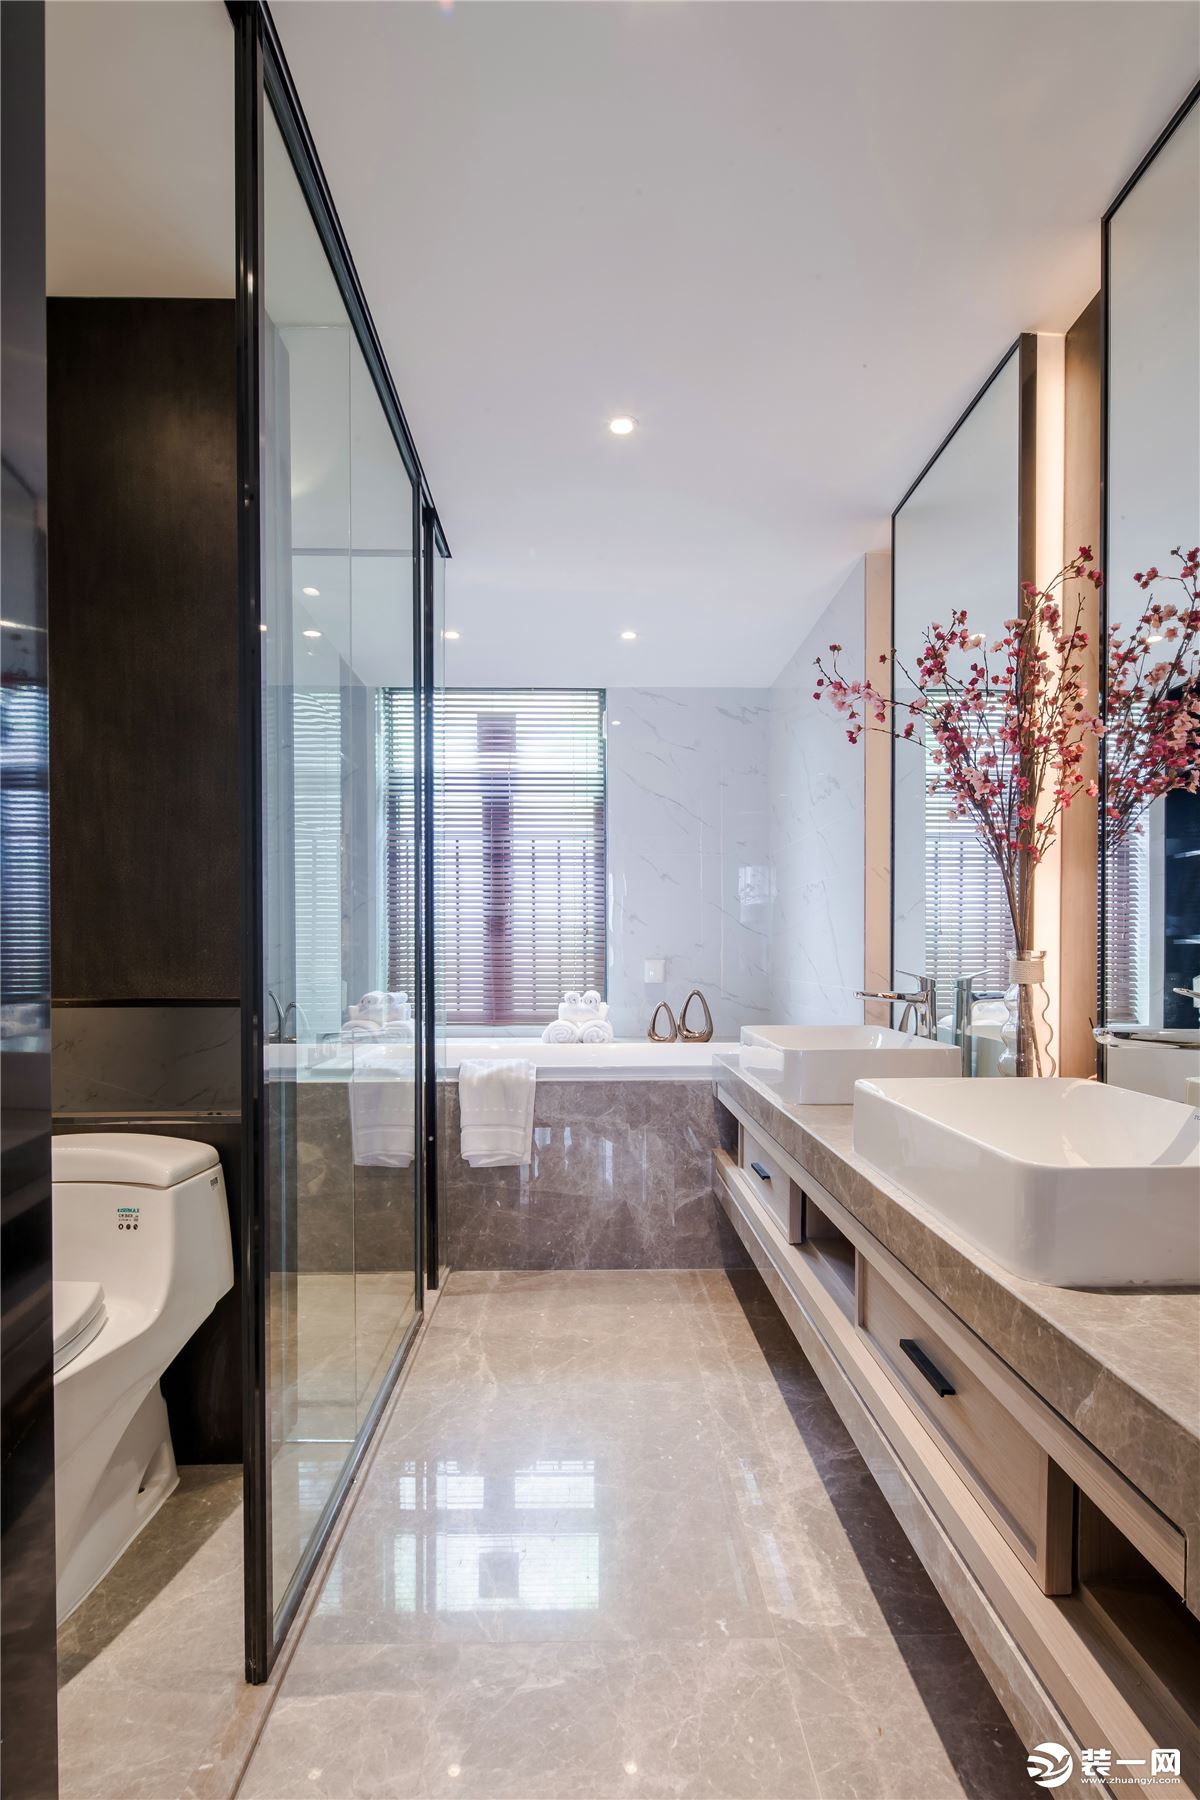 【千思装饰】180㎡新中式样板房+卫生间 洁具完美新中式实景样板房